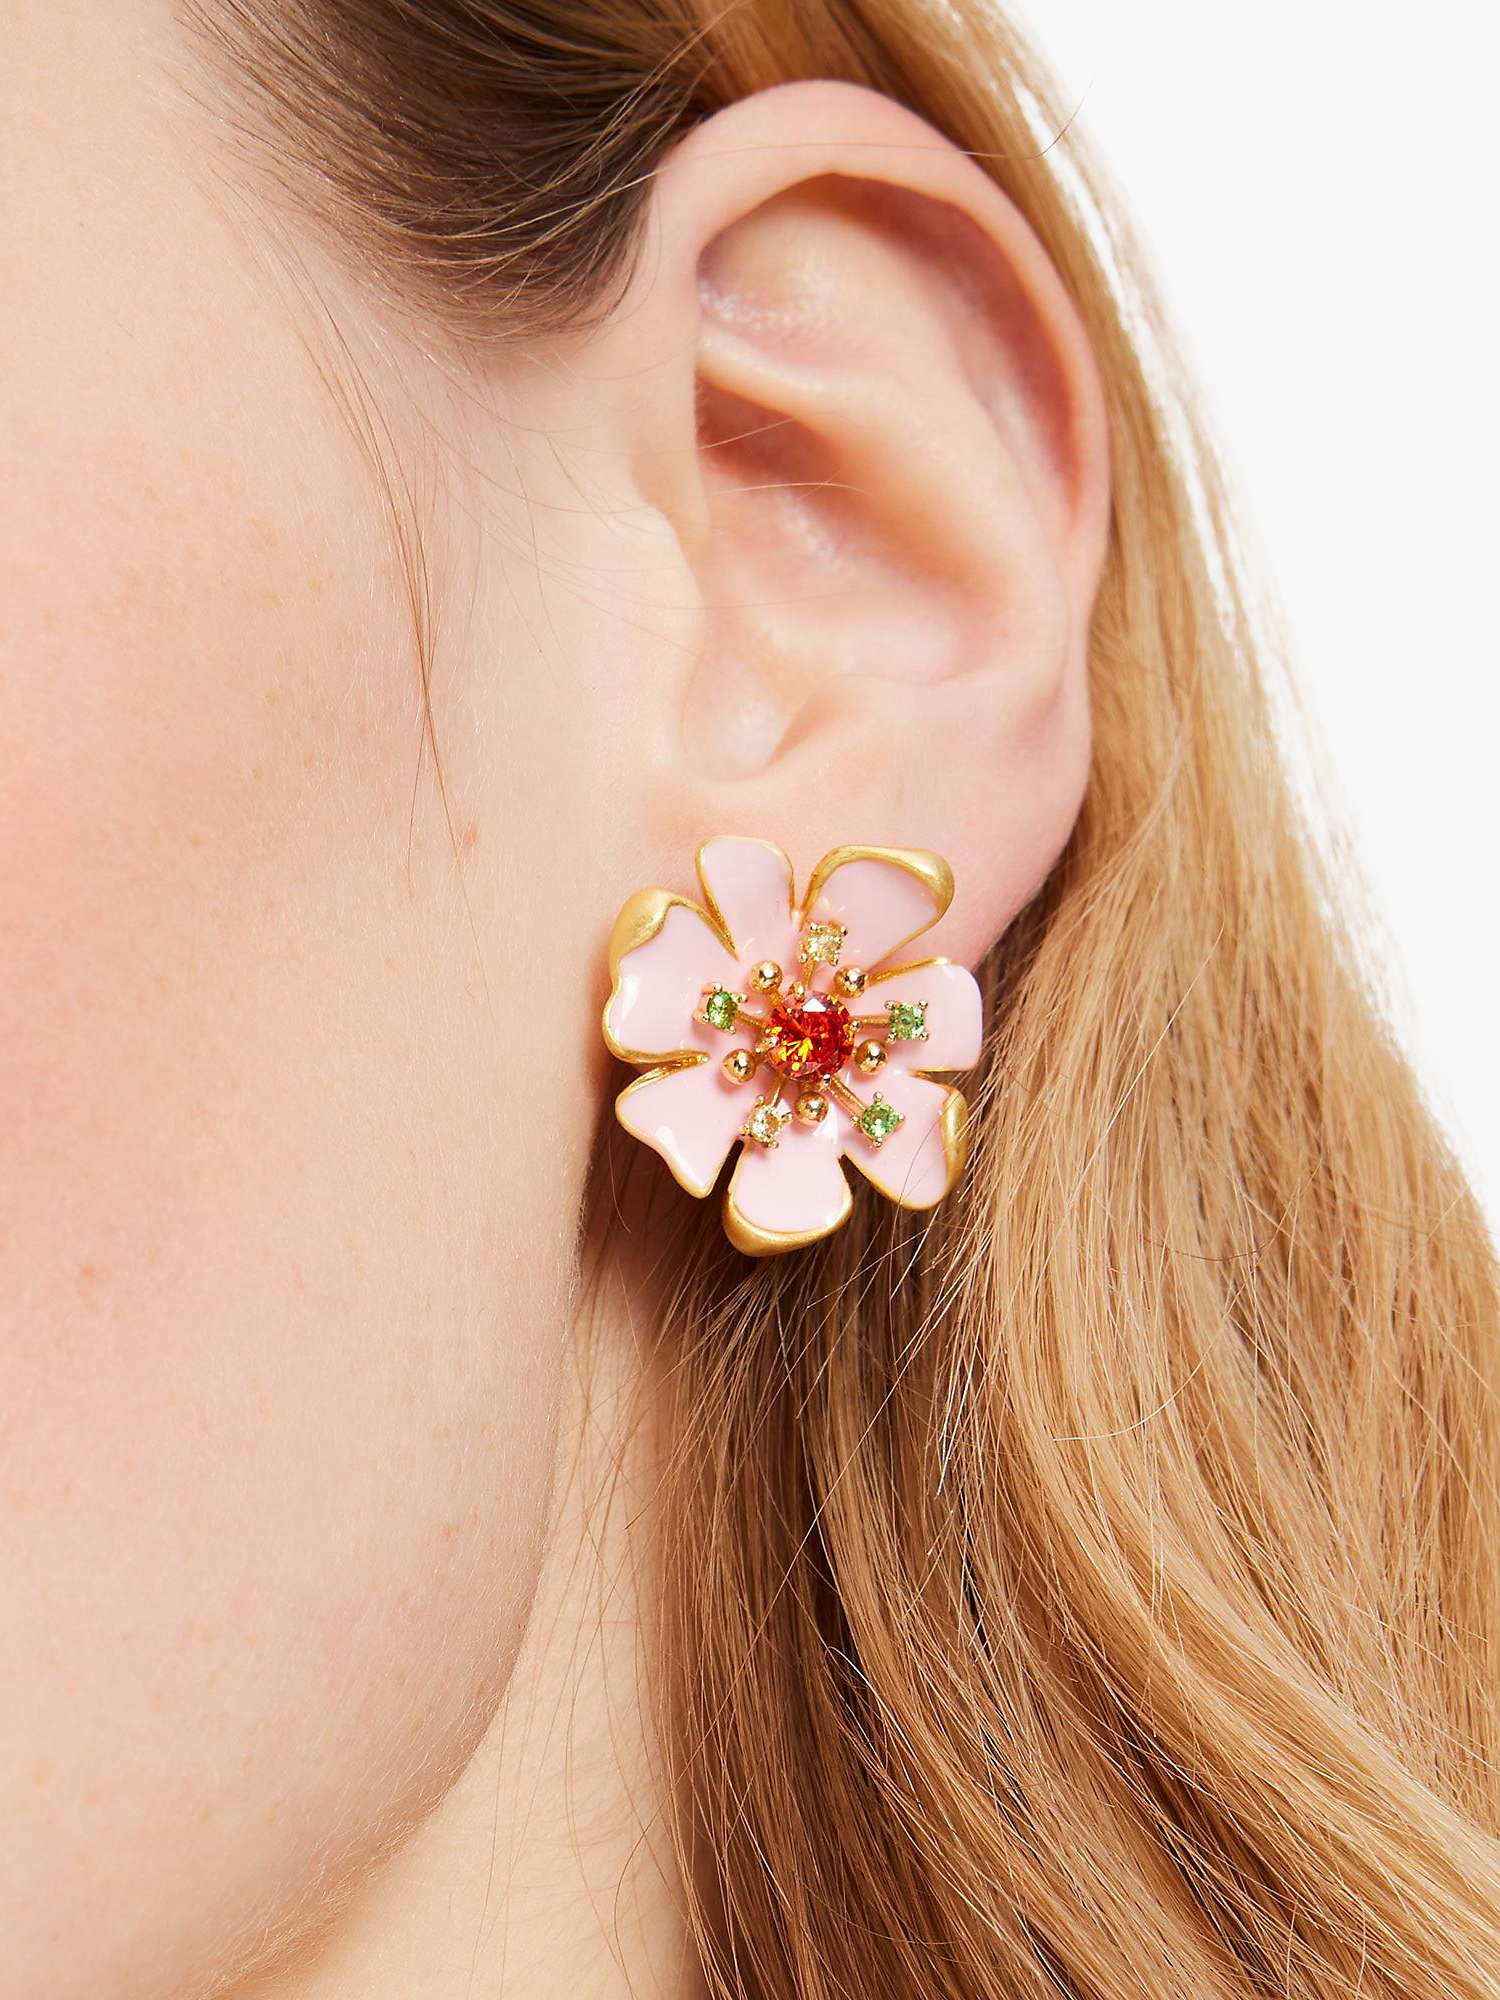 Buy kate spade new york Bloom Enamel Stud Earrings, Multi Online at johnlewis.com